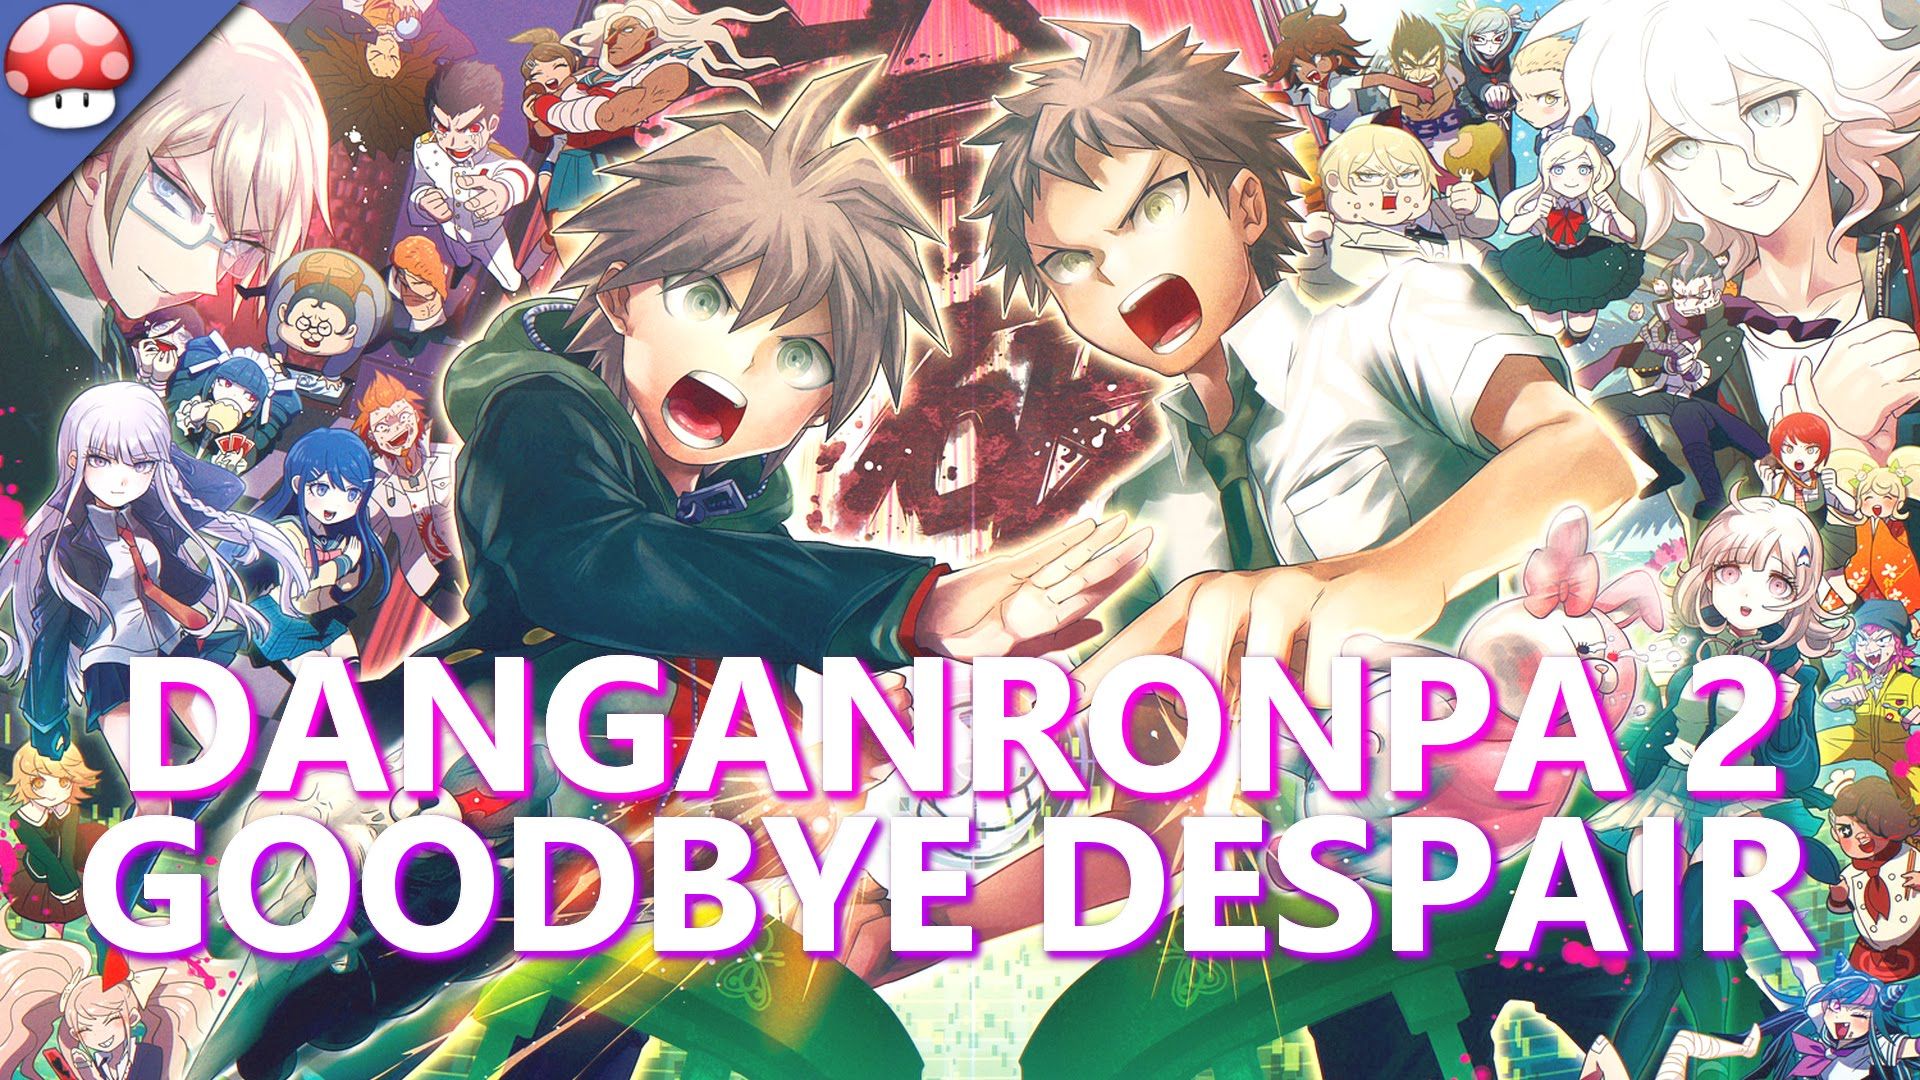 Danganronpa 2 Goodbye Despair Wallpapers